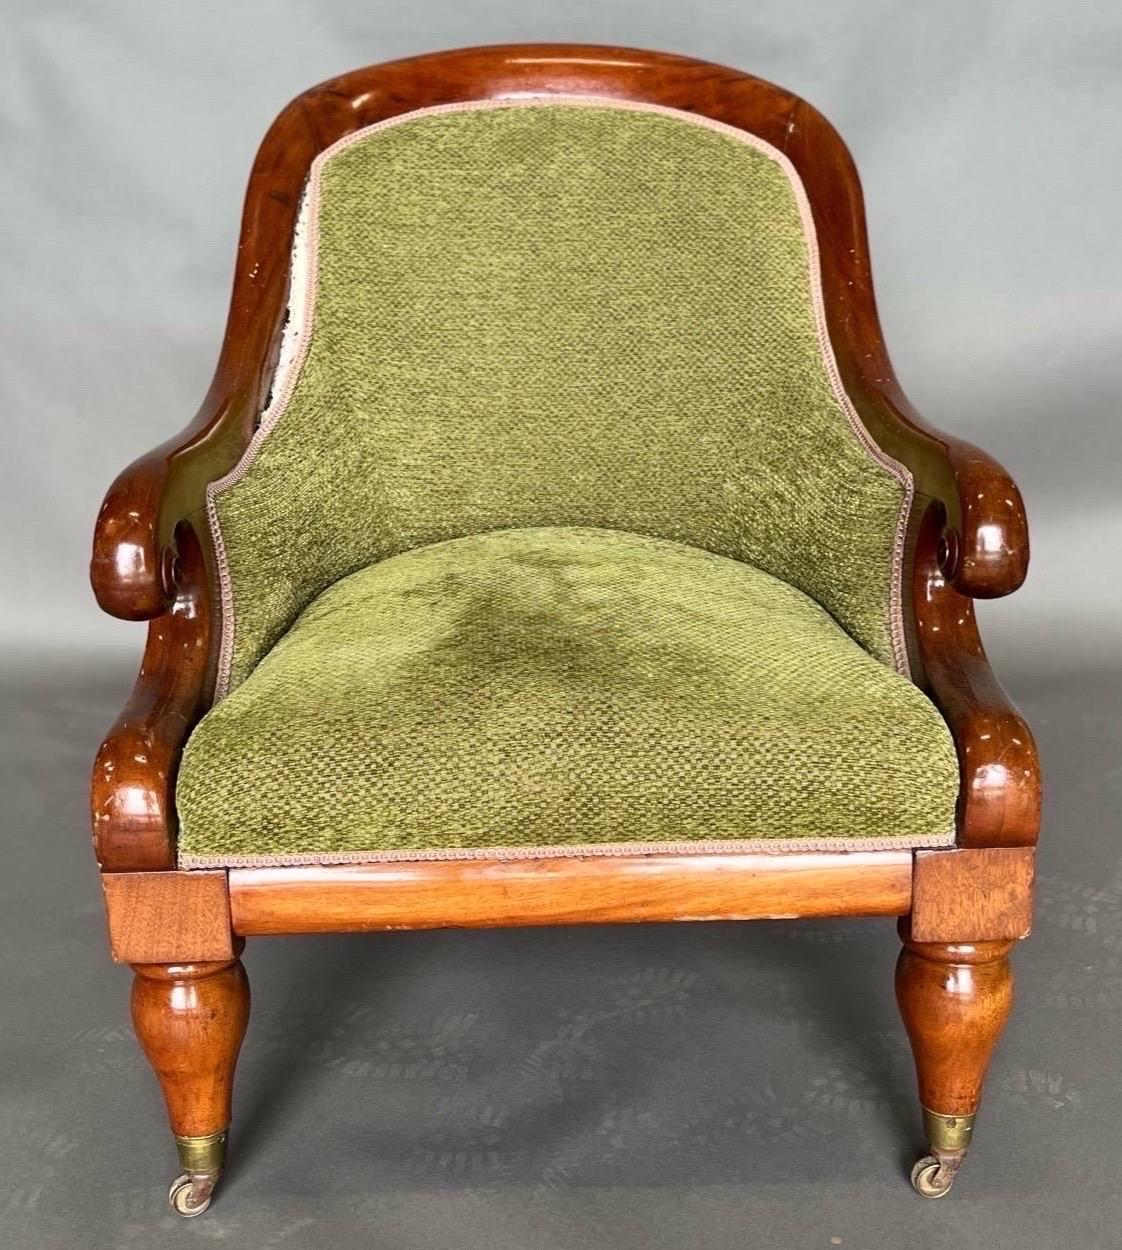 Chaise de bibliothèque confortable en acajou anglais du 19e siècle, tapissée. Superbe couleur et échelle. Le tissu est prêt à être utilisé tel quel ou peut être facilement retapissé. 